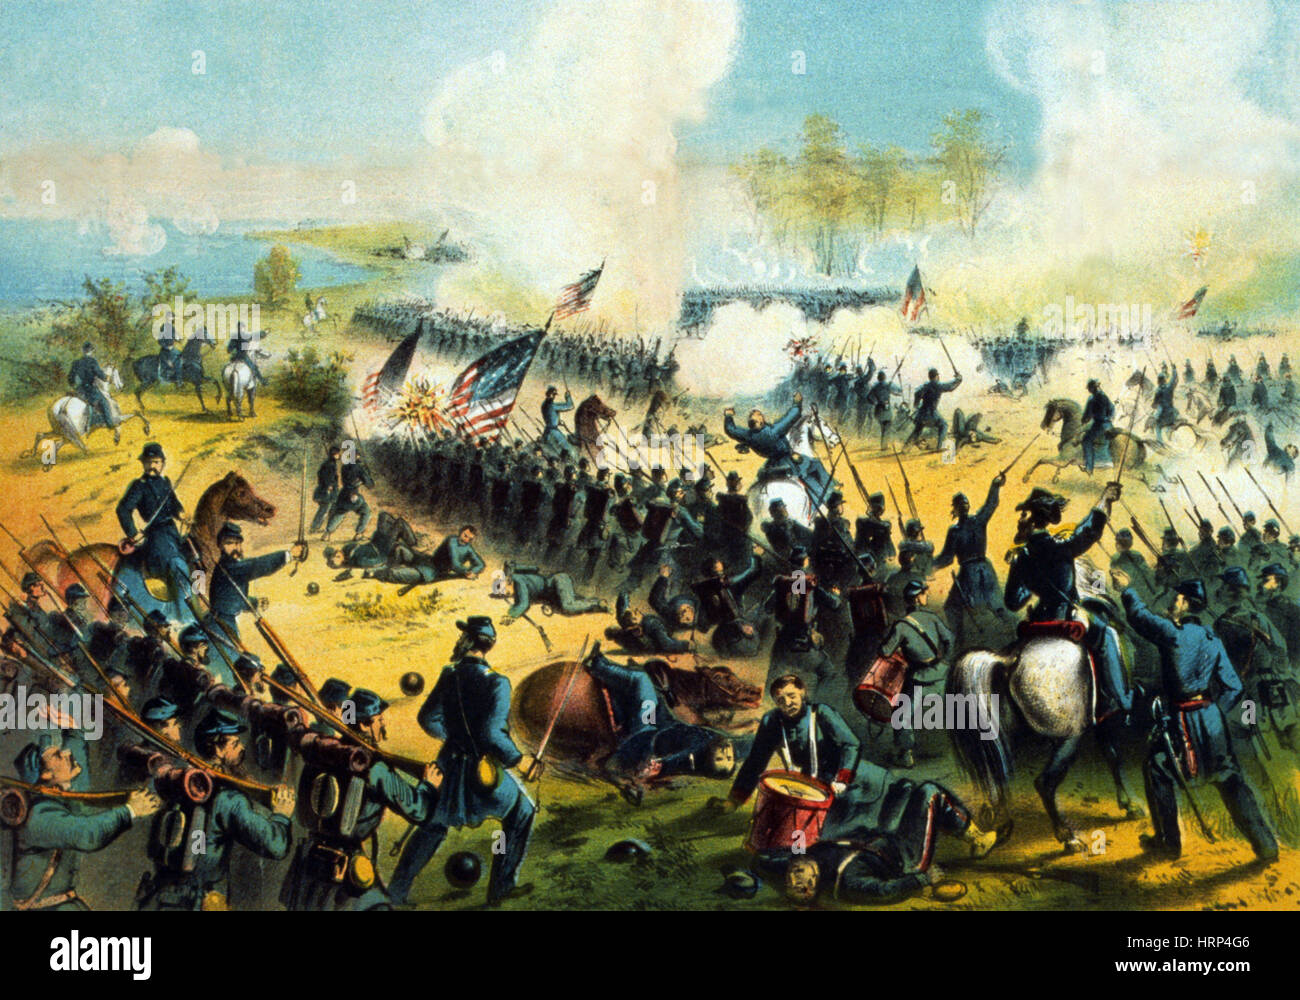 La Guerra Civil Americana, la batalla de Shiloh, 1862 Foto de stock